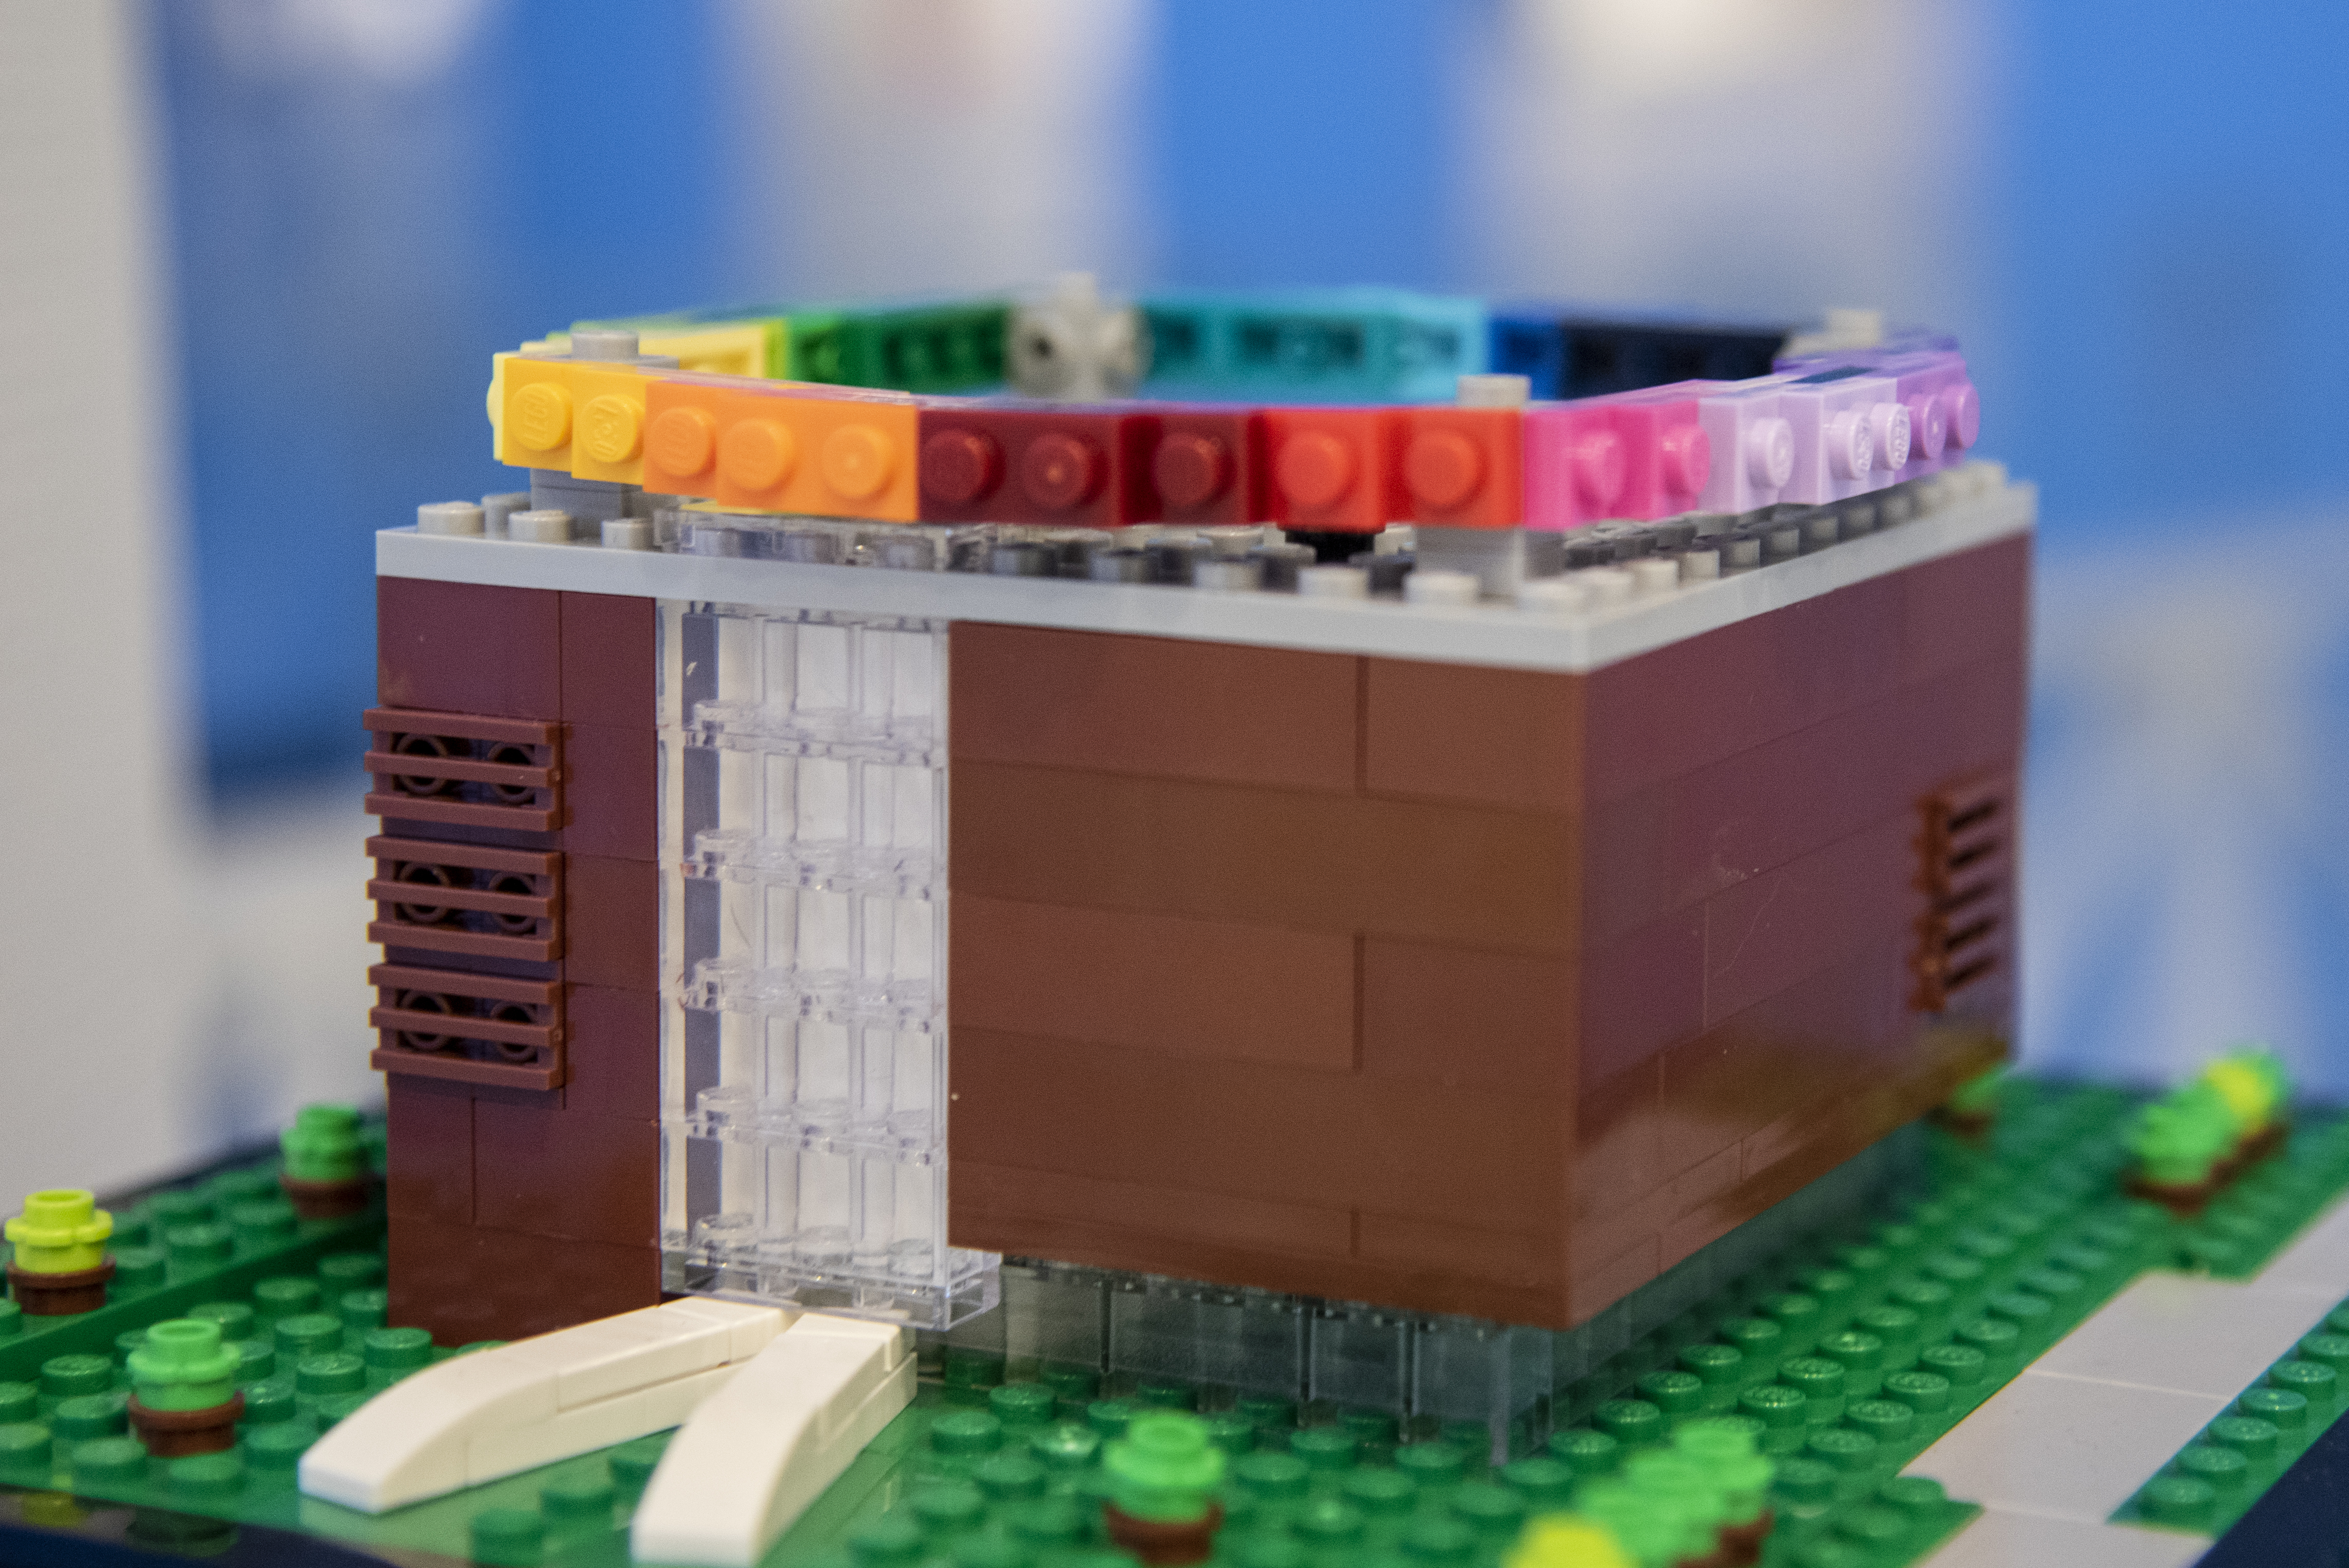 magi Ydeevne Ære PRESSEMEDDELELSE: LEGOLAND® besøger Aarhus i vinterferien for at bygge  farvestrålende LEGO® modeller med byggeglade børnefamilier | LEGOLAND  Billund